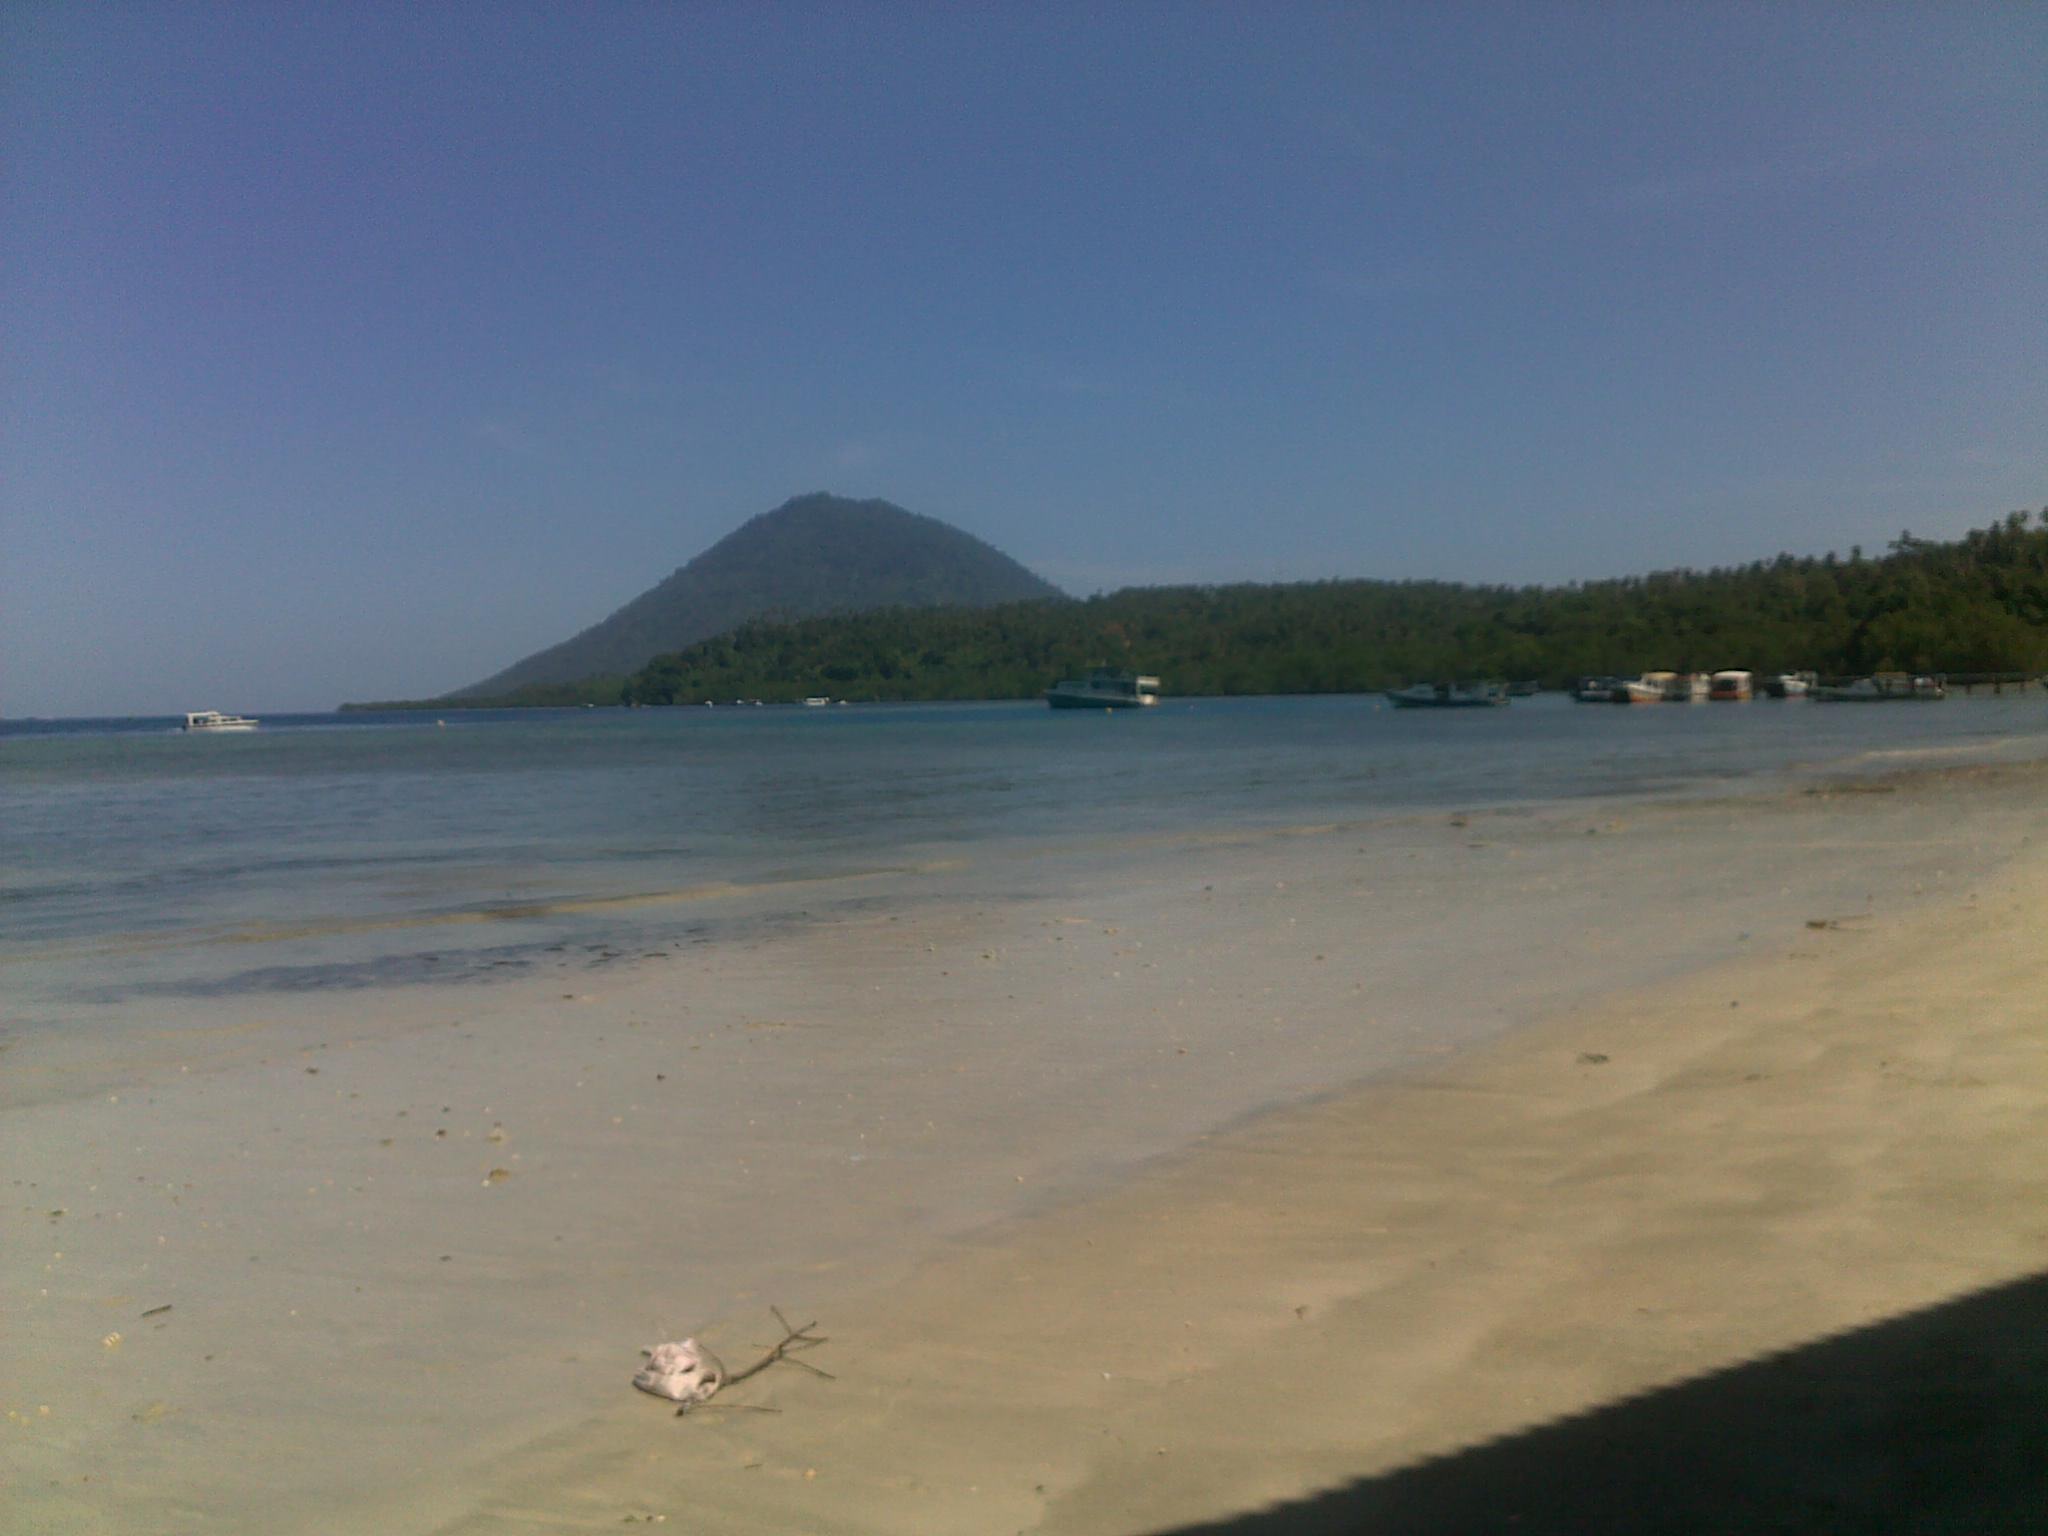 Cerita Liburan Dibuang Sayang 2 Pulau Bunaken Tidak Seindah